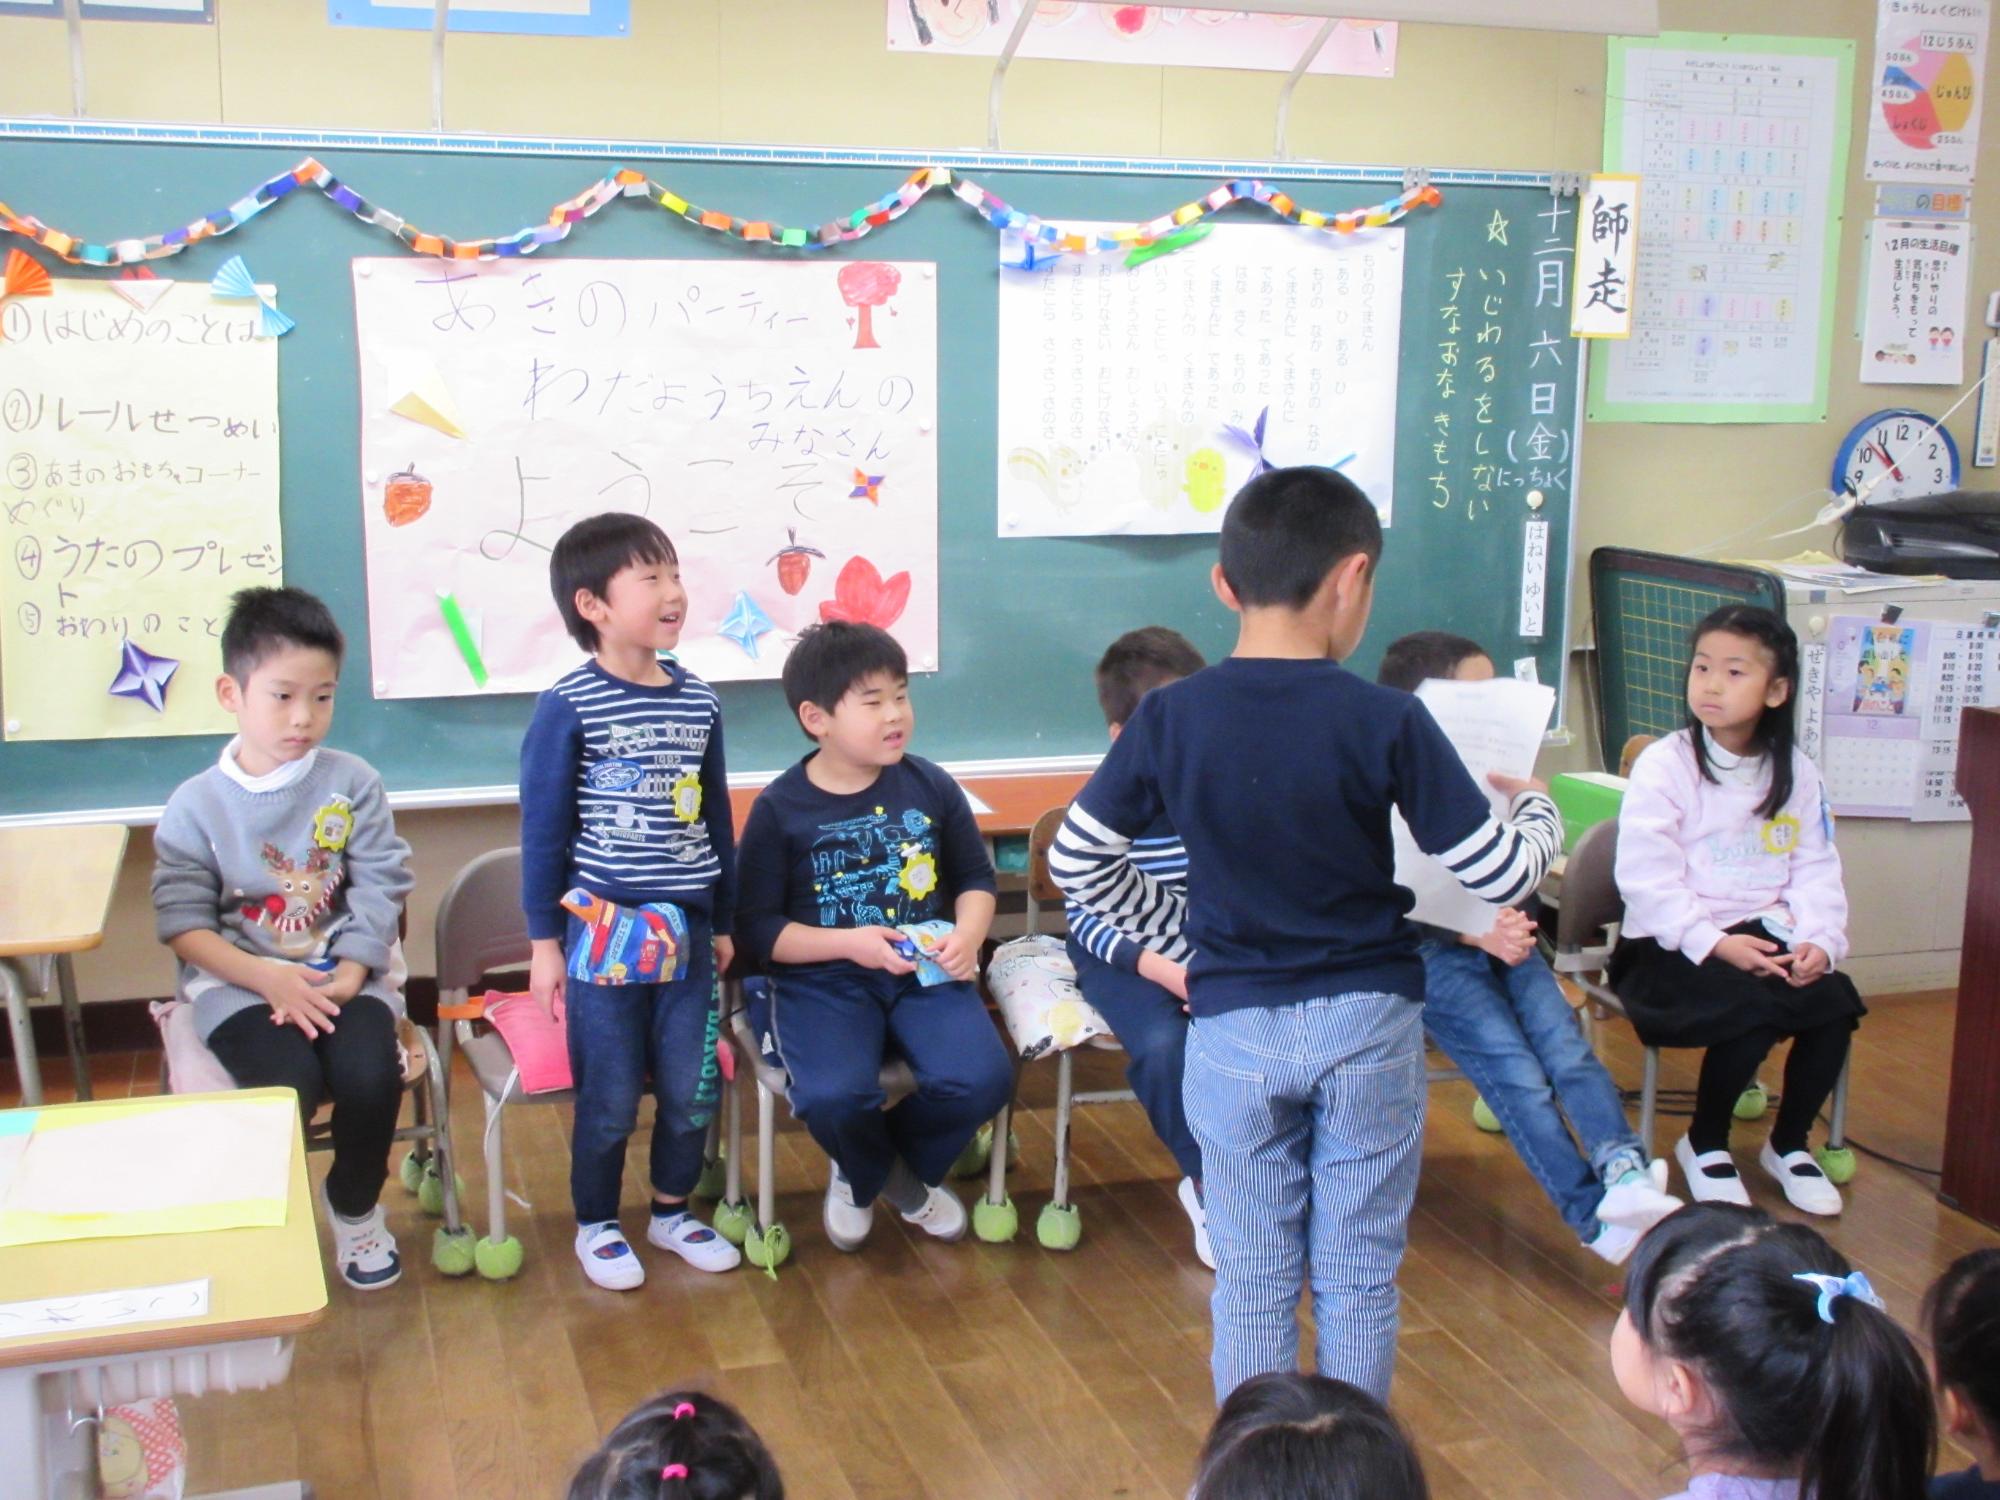 向かい合って着席している園児と児童の間に、紙を持った男の子が立っている写真